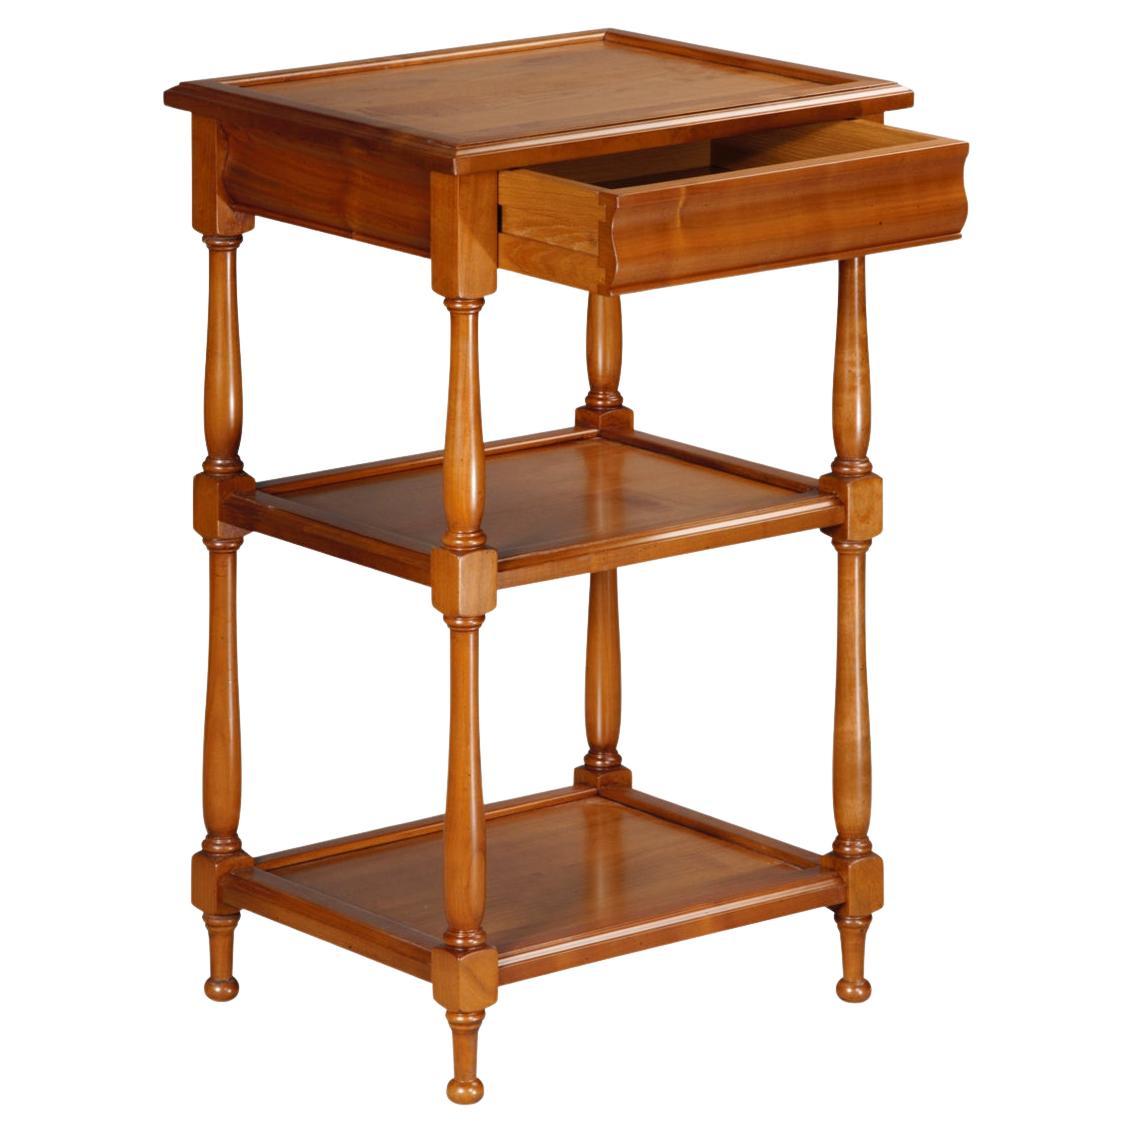 Table de service de style Louis Philippe en bois de cerisier massif, 1 tiroir et 2 étagères